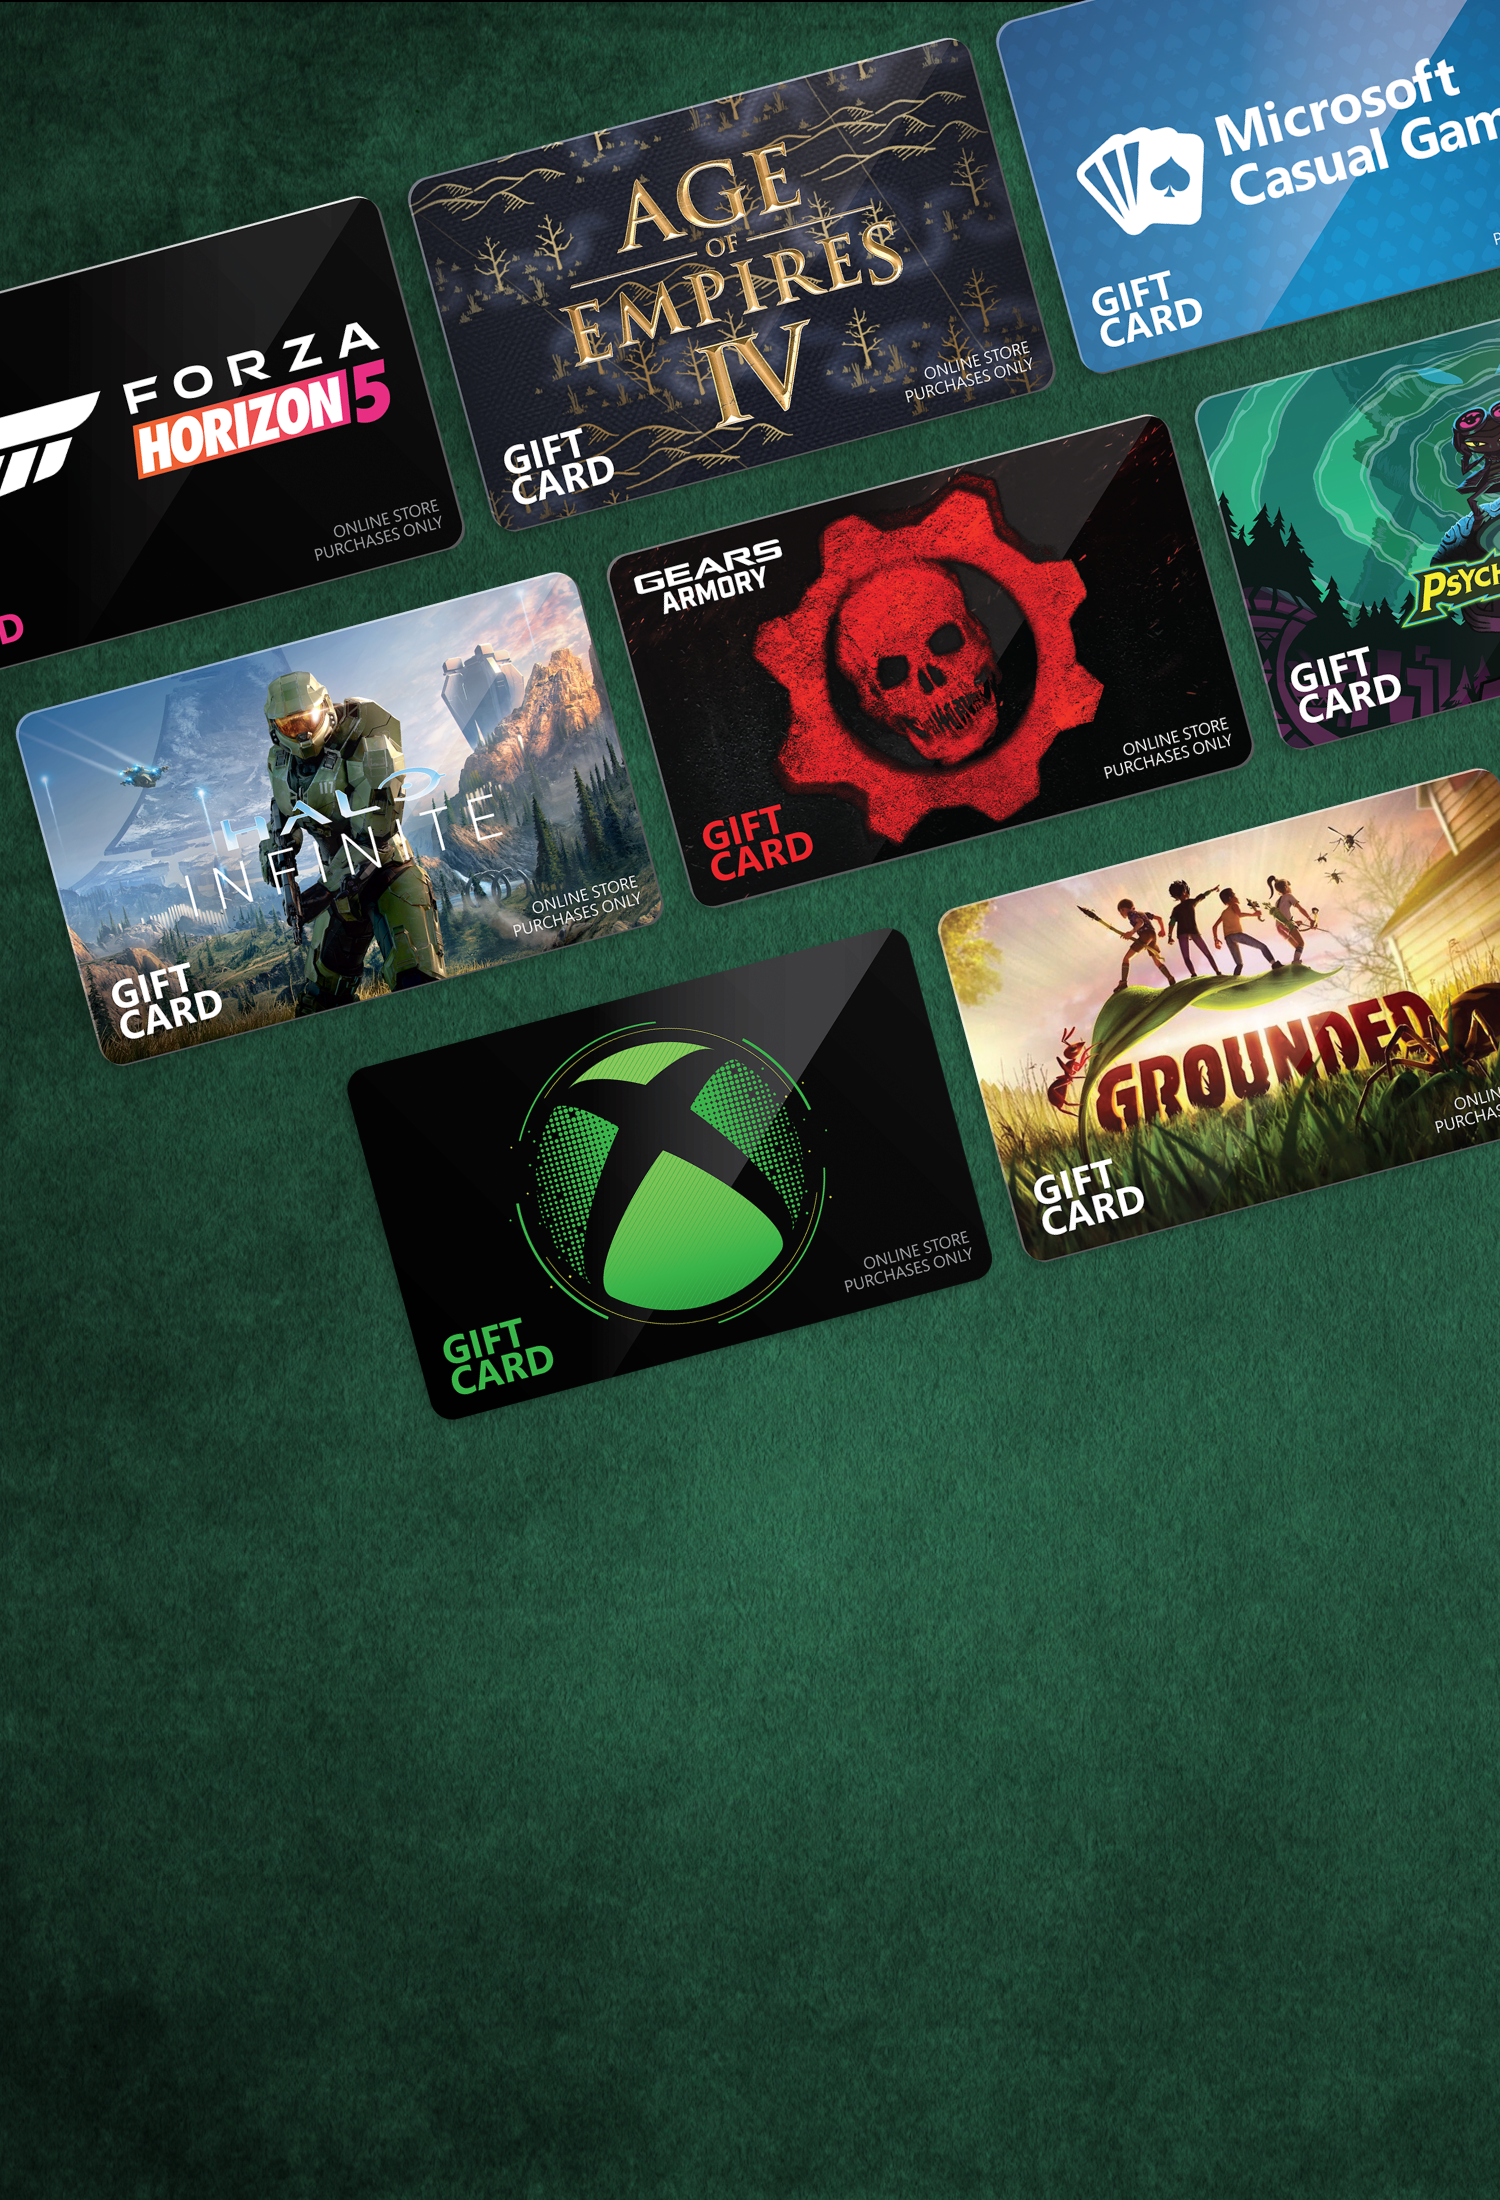 Kits oficiais do Xbox 360 estão mais baratos no Brasil